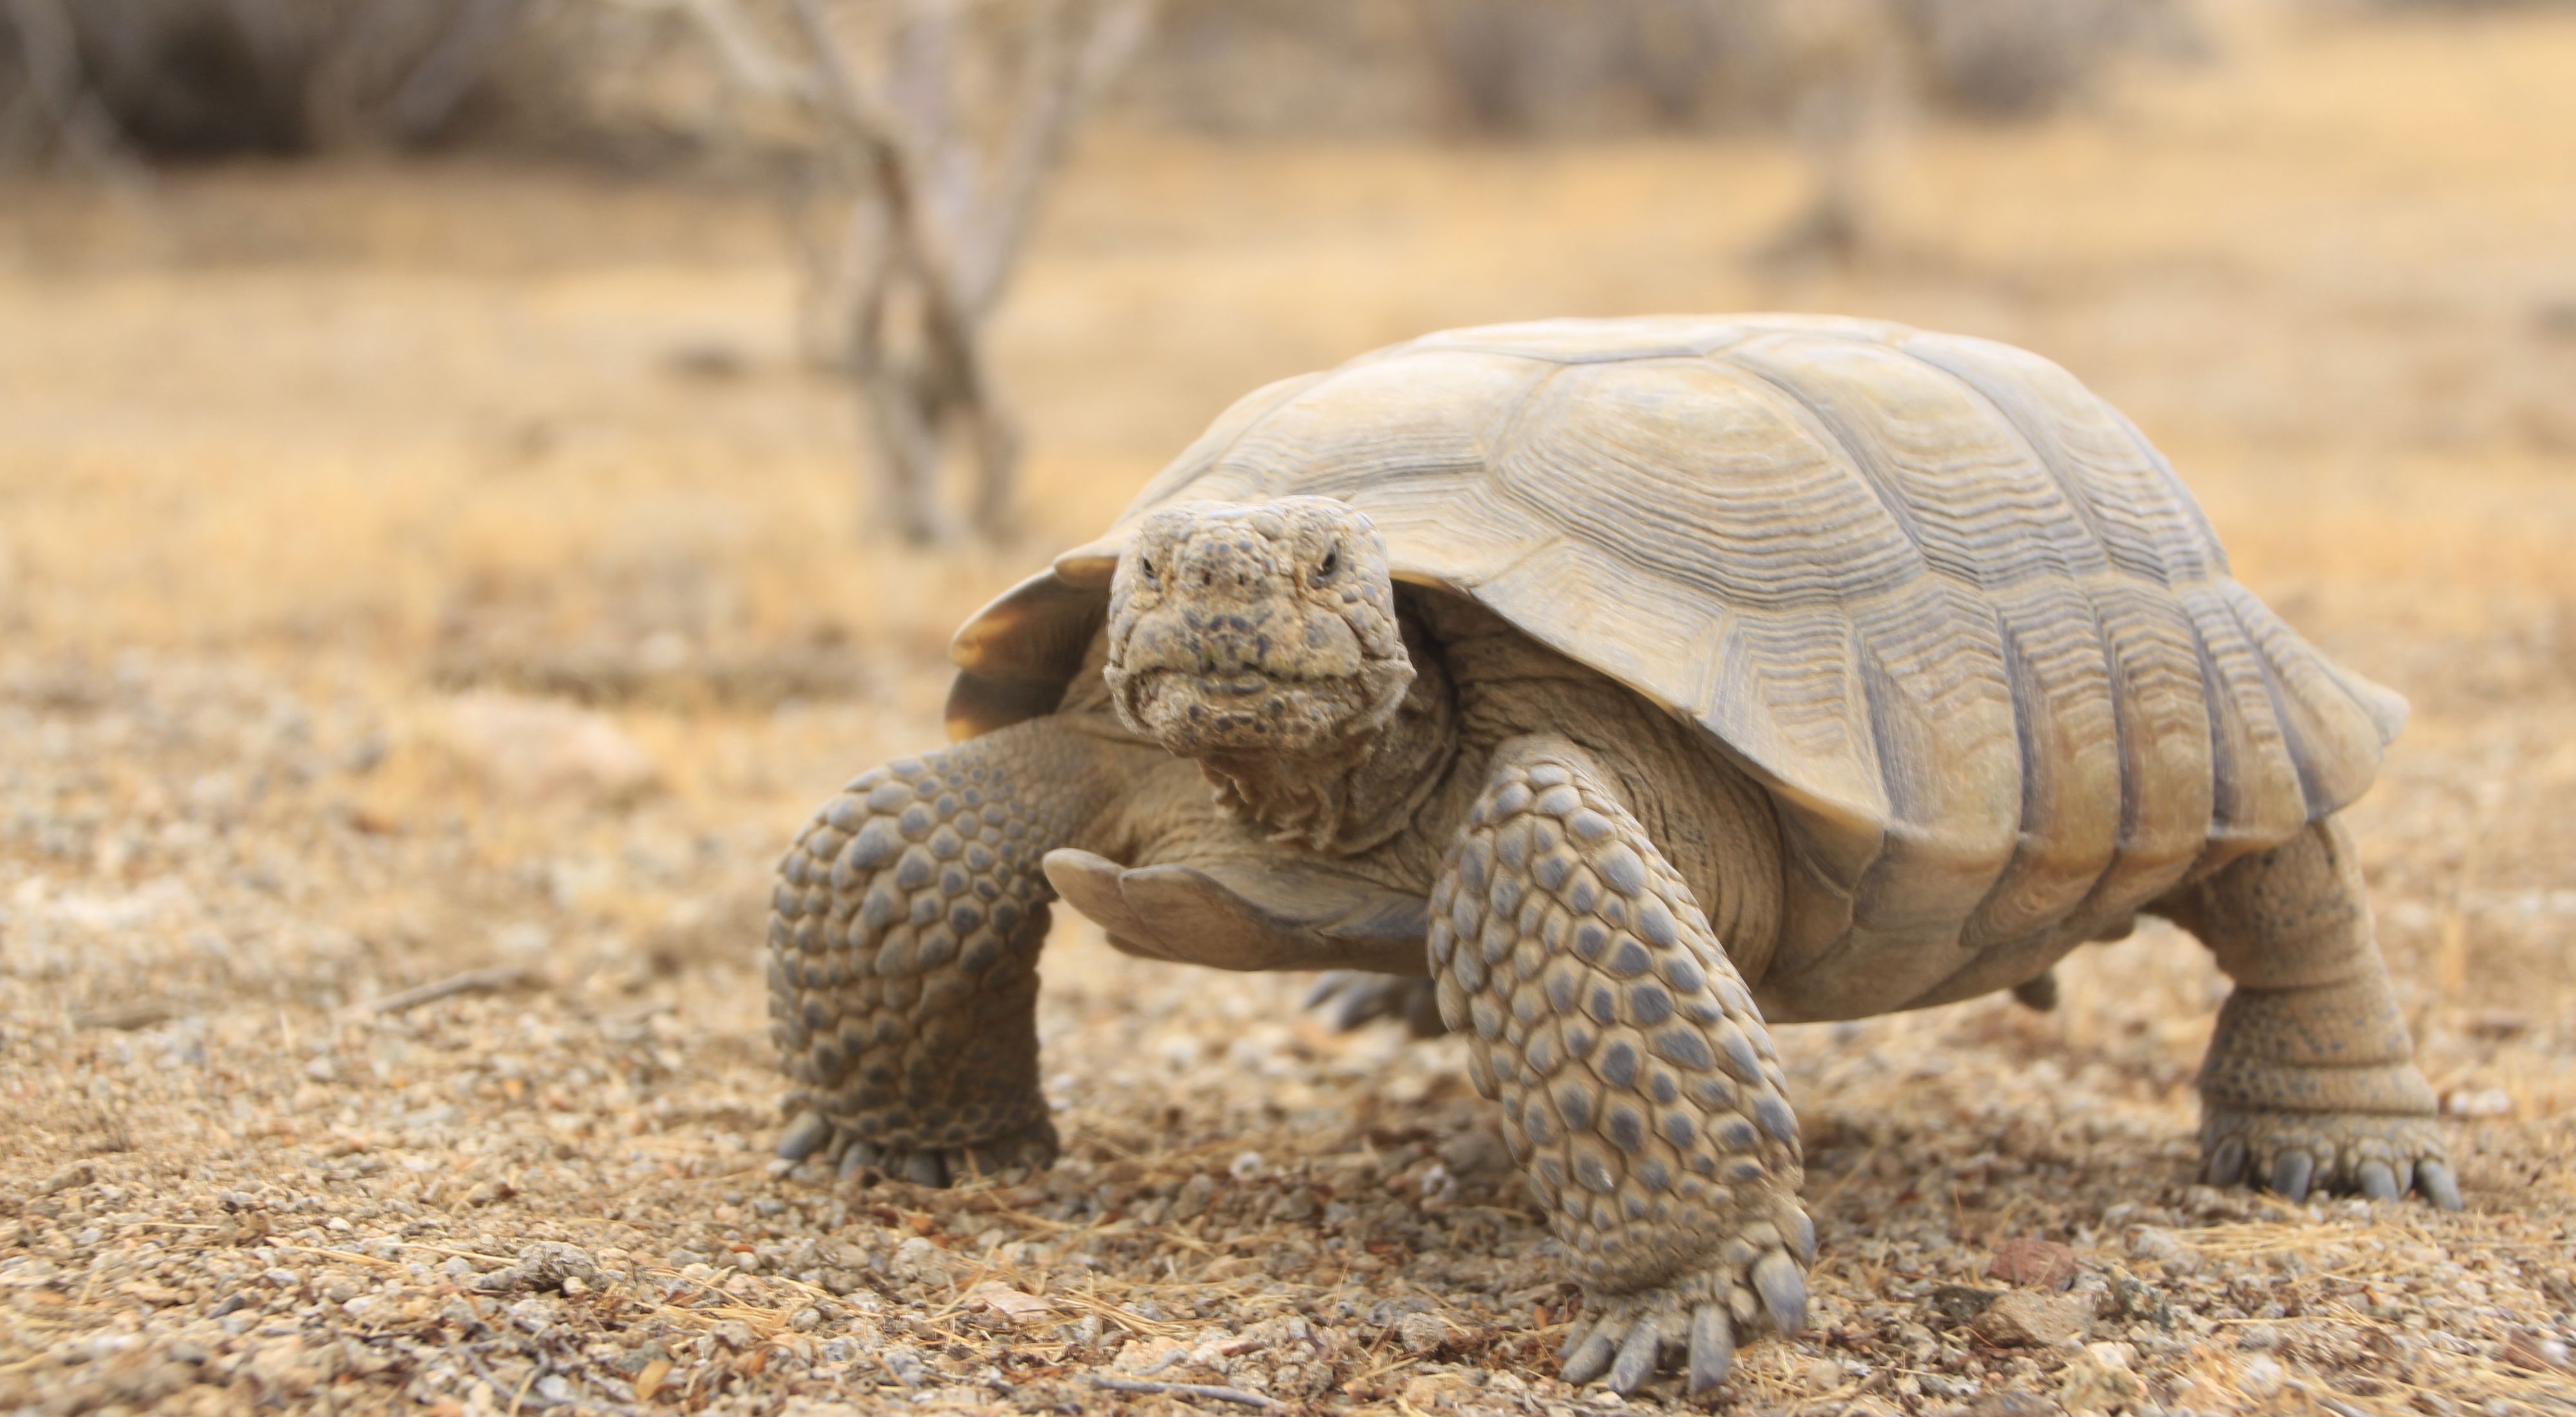 desert tortoise habitat model